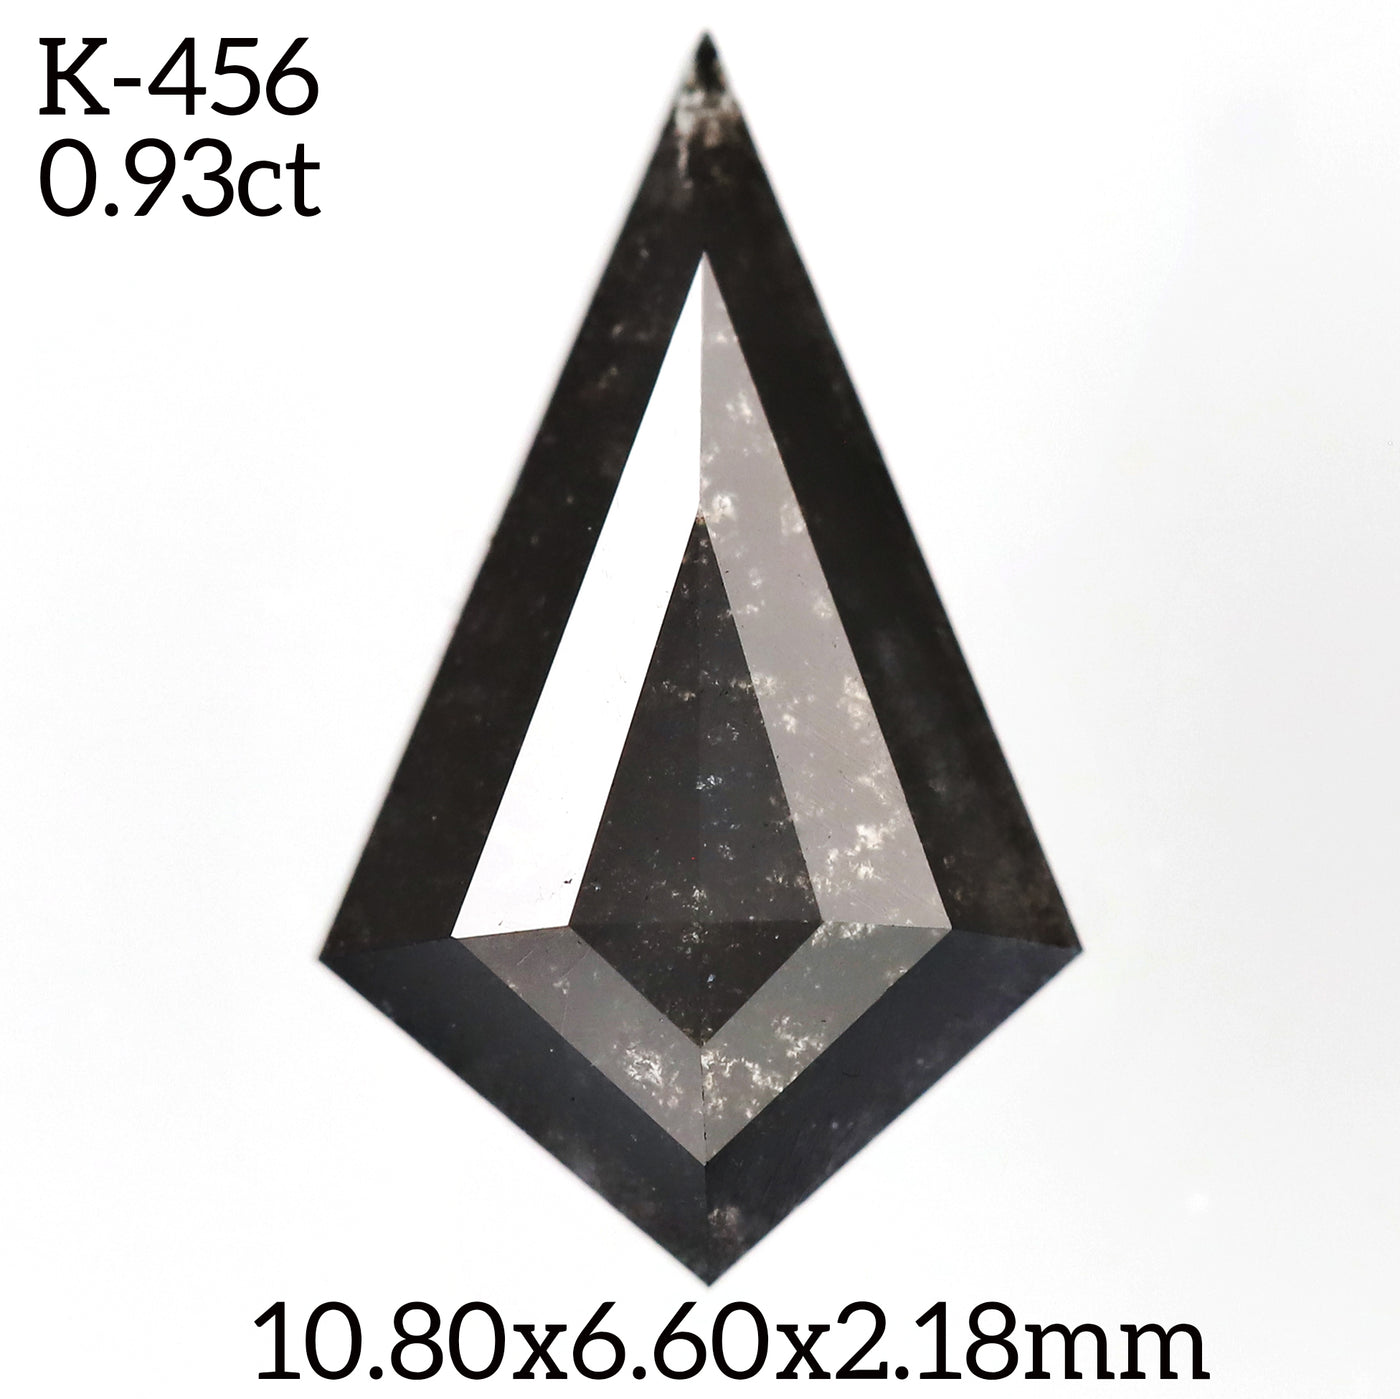 K456 - Salt and pepper kite diamond